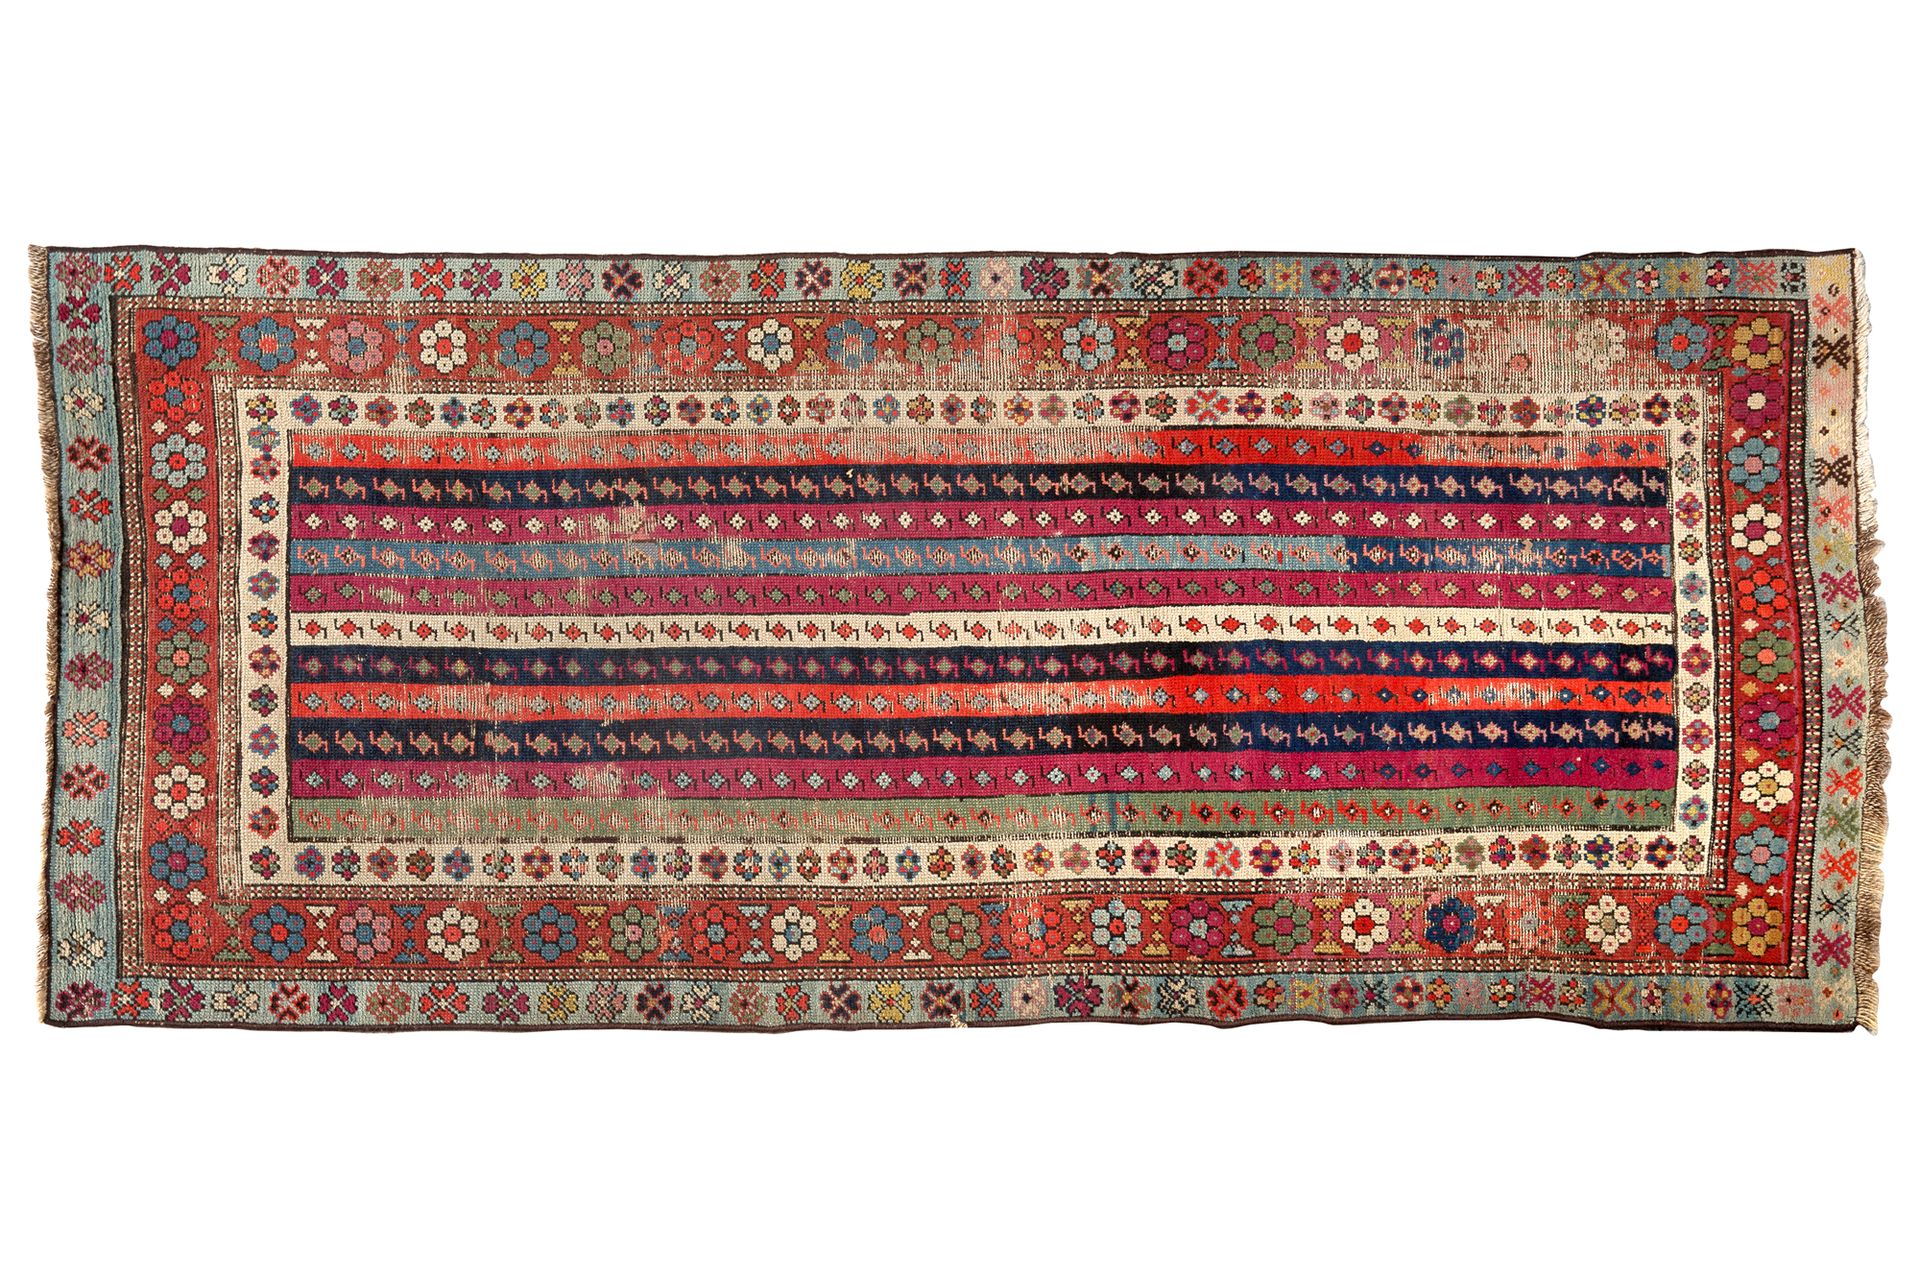 Null [TAPPETI]
Talich (Caucaso) 1870/1880 ca. Velluto di lana su fondo di lana. &hellip;